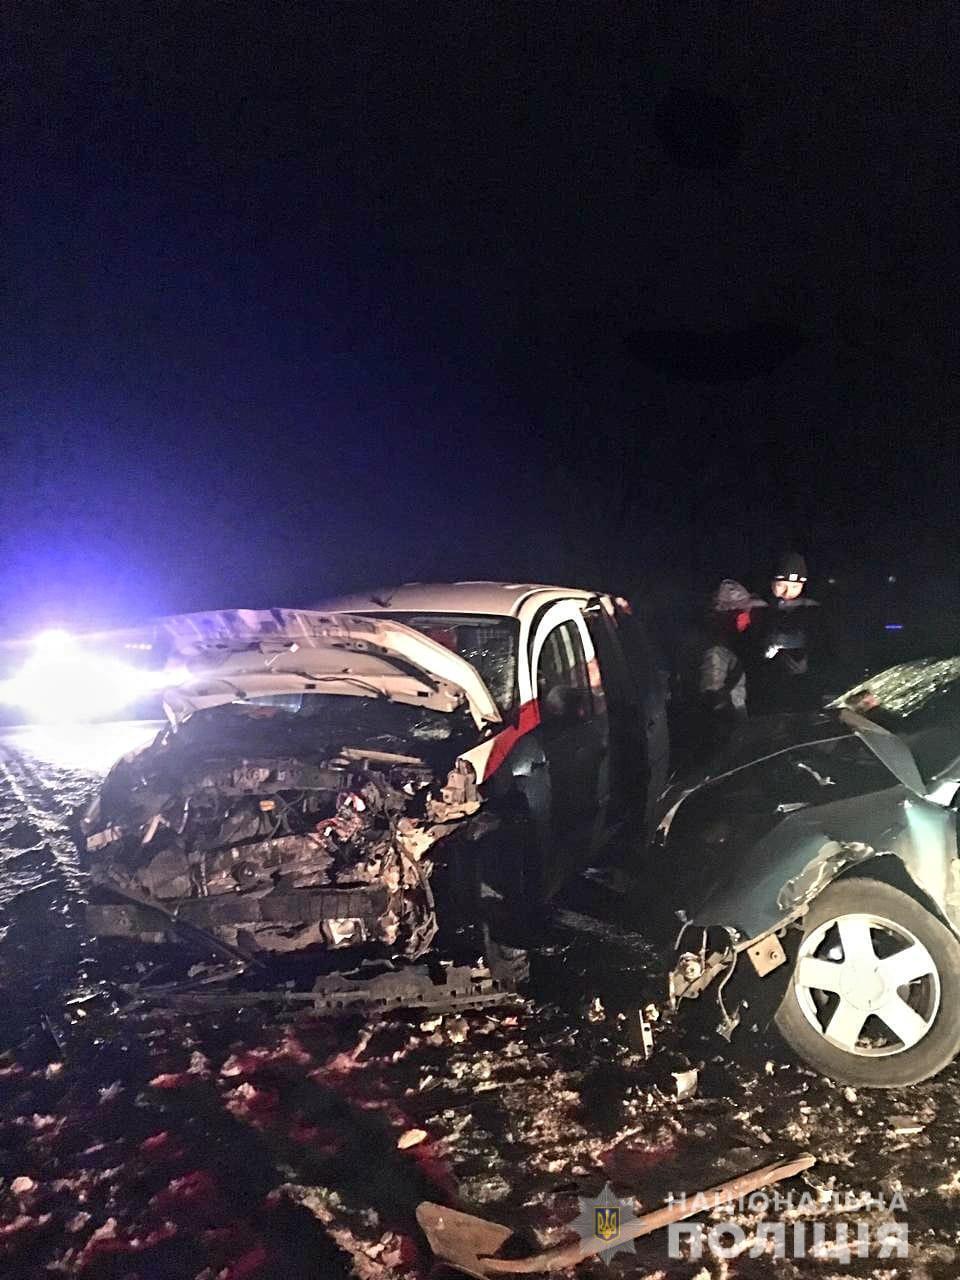 Внаслідок аварії травми отримали водій та пасажир однієї з машин.